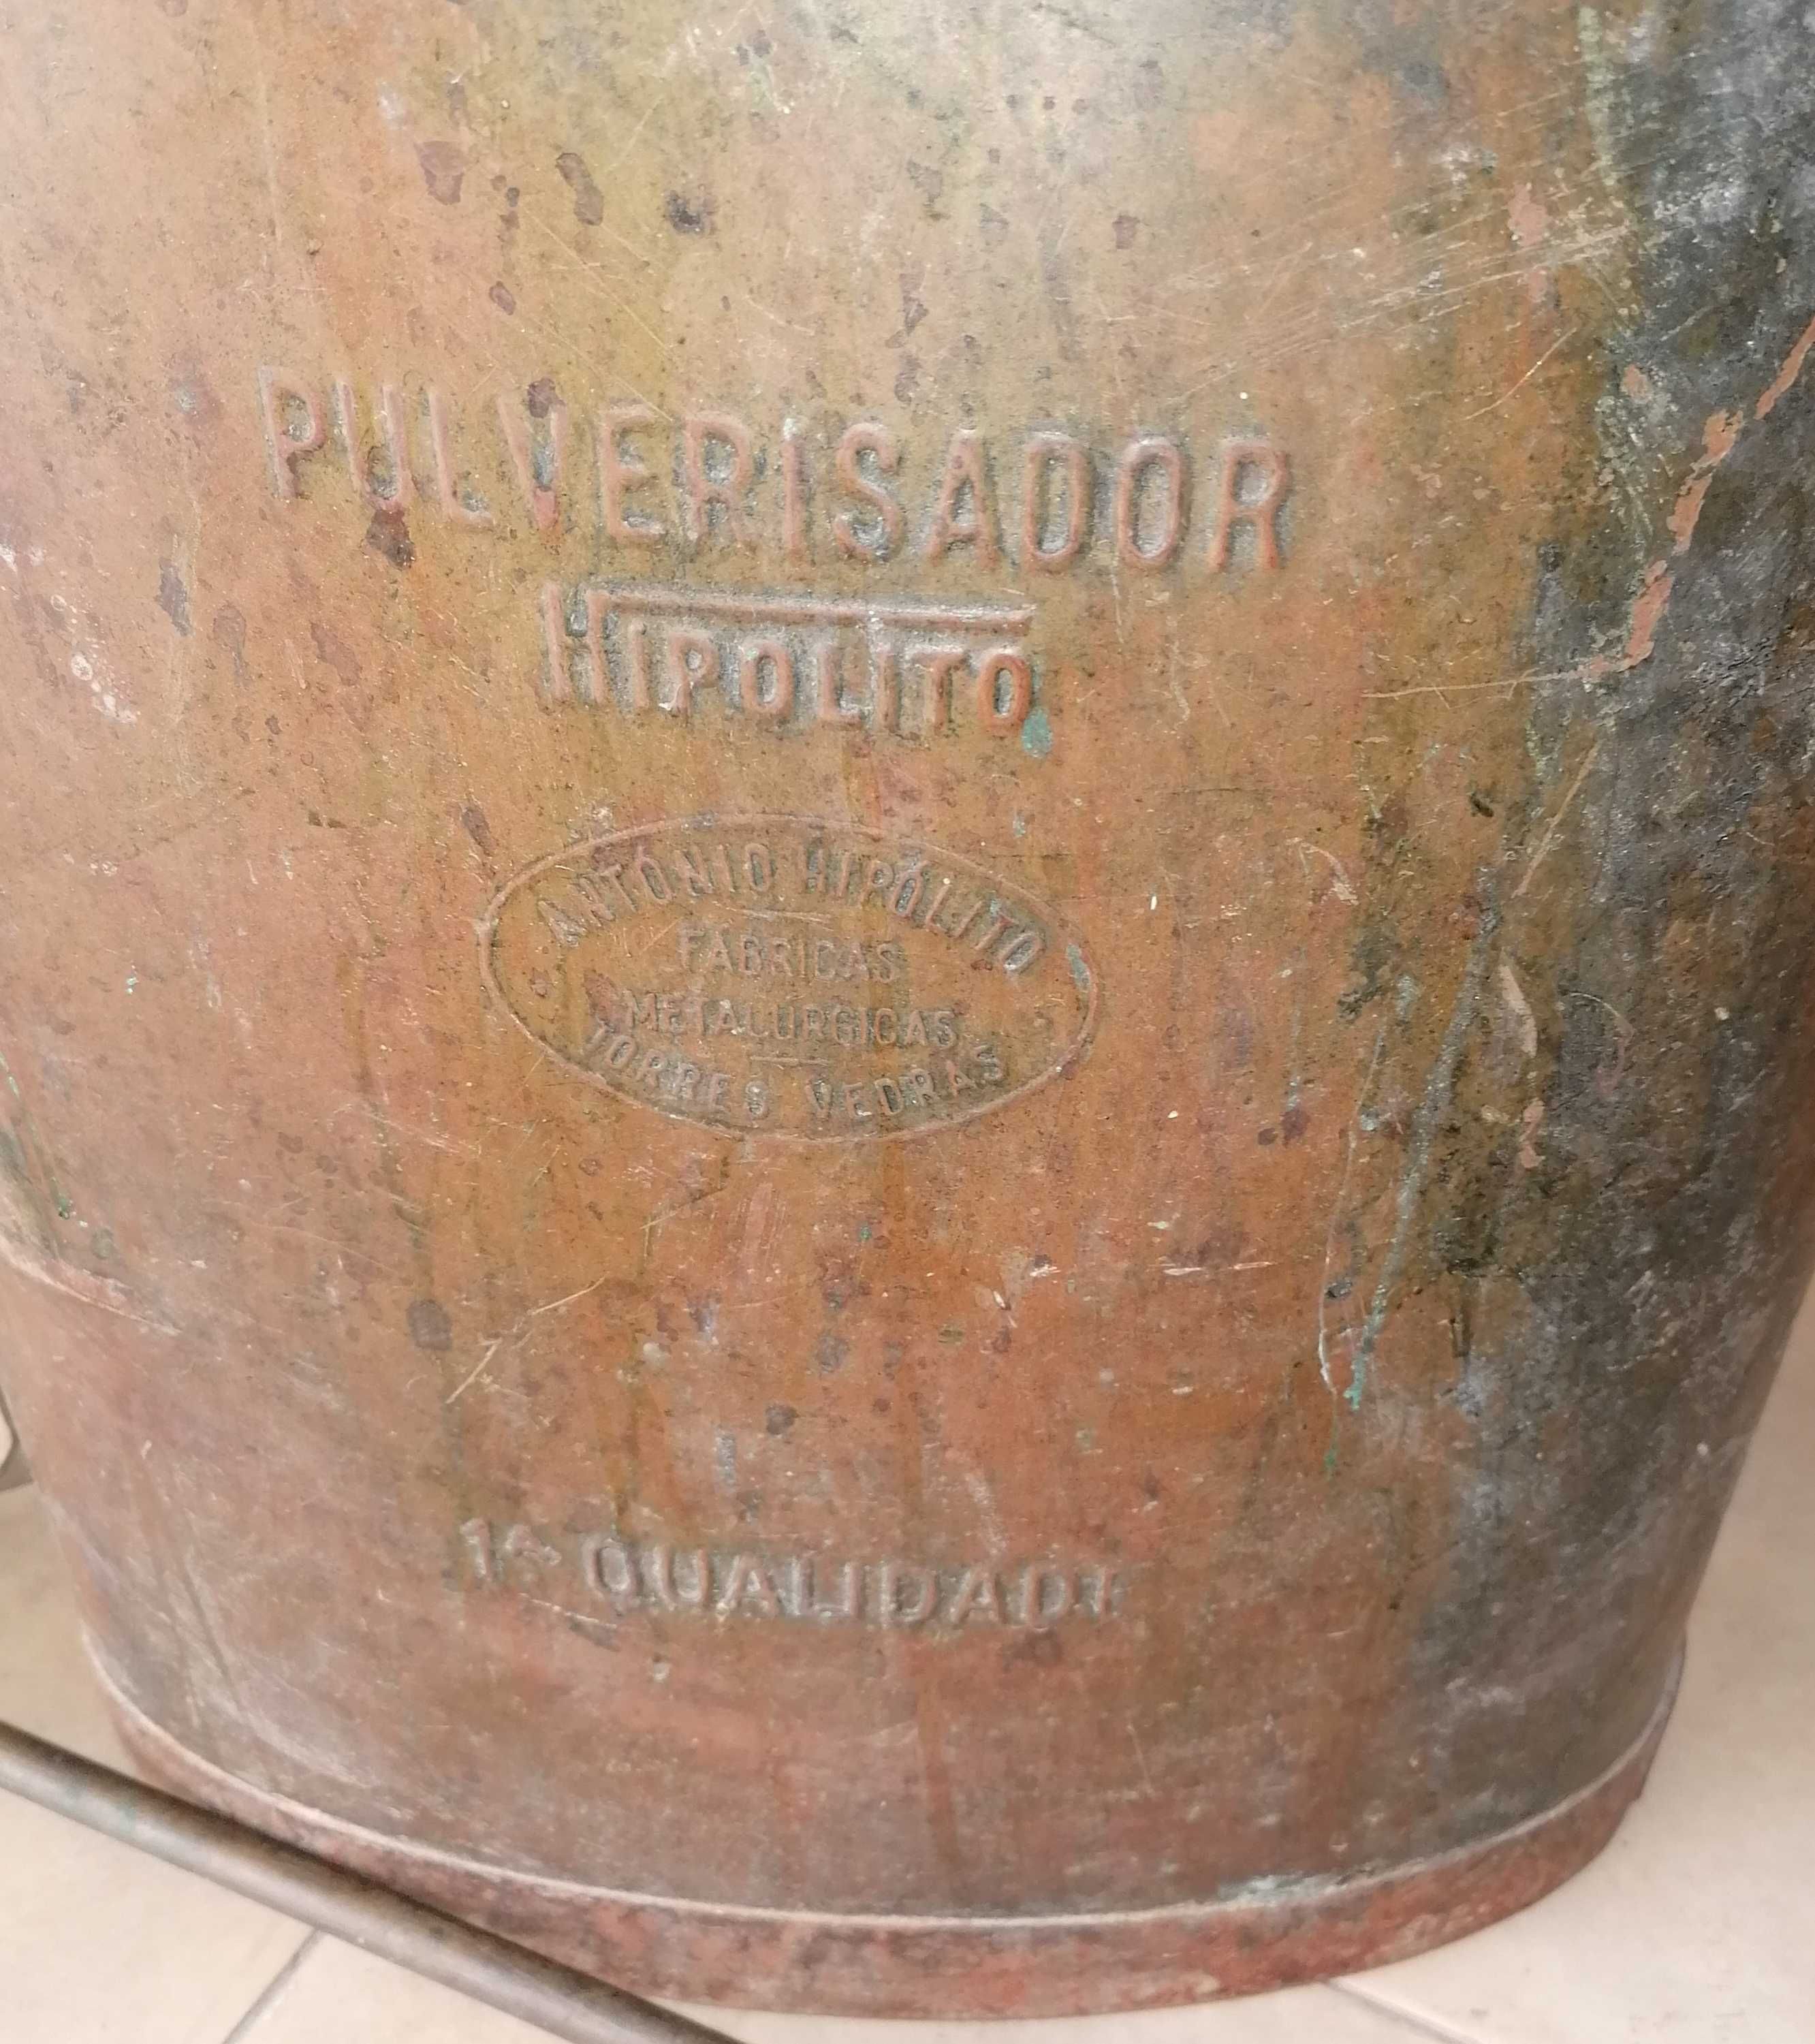 Pulverizador em cobre, Hipolito, muito antigo, funcional